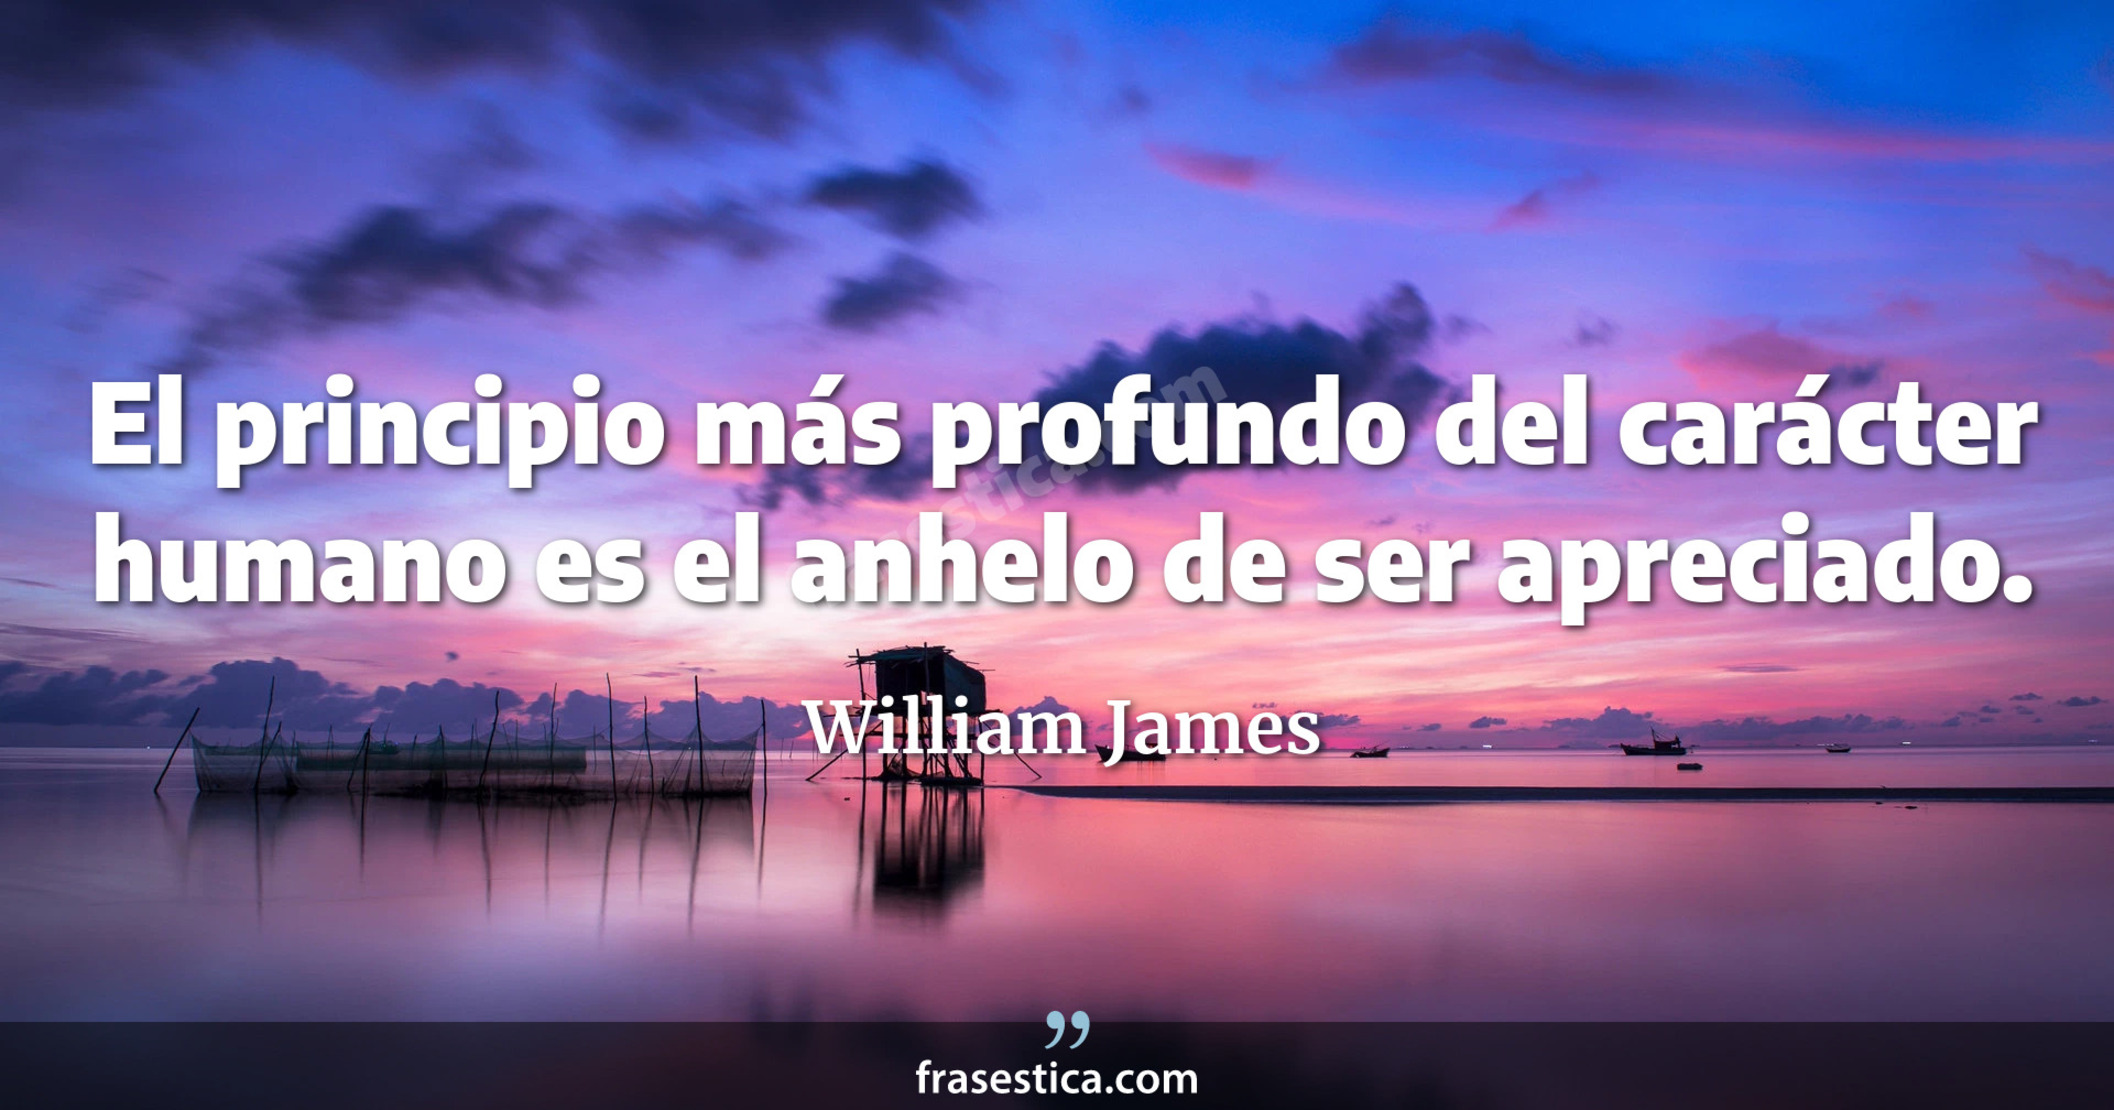 El principio más profundo del carácter humano es el anhelo de ser apreciado. - William James